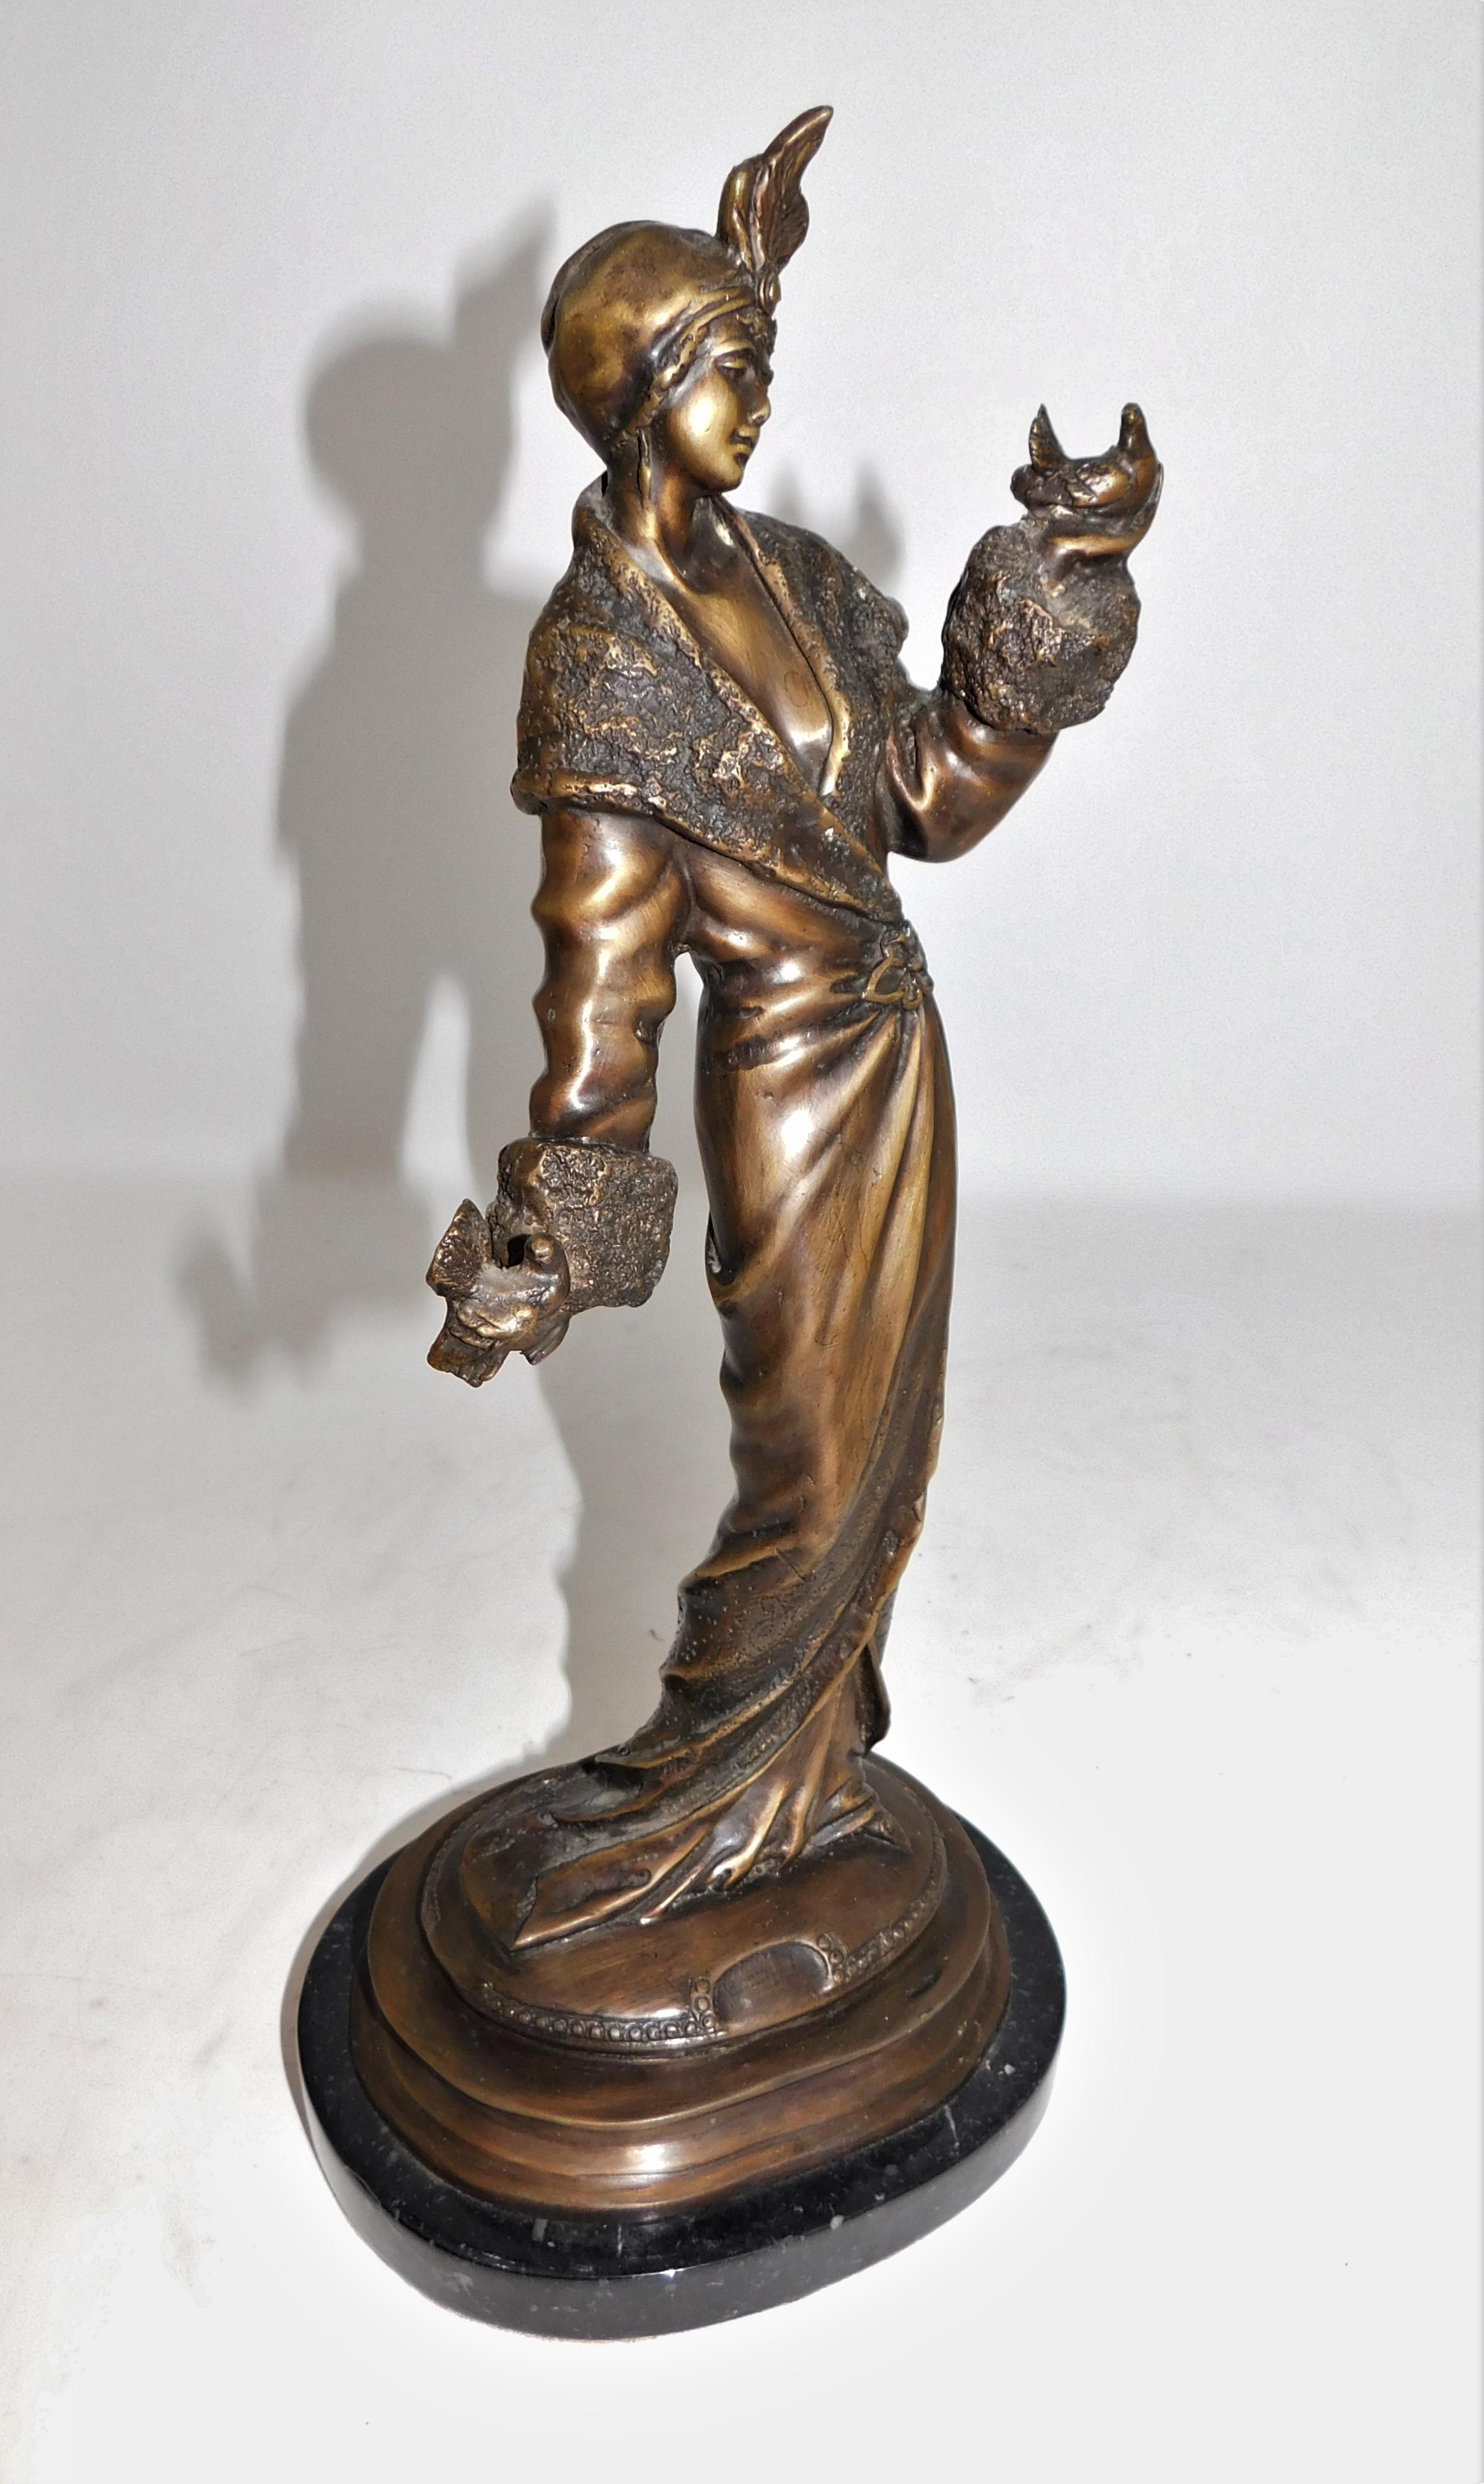 Magnifique figurine en bronze Art Nouveau/Art Déco représentant une femme dans une longue robe fluide des années 1920 avec des colombes sur une base en marbre.  Non signé mais bien conçu avec des détails complexes, il mesure 15 pouces de haut.
